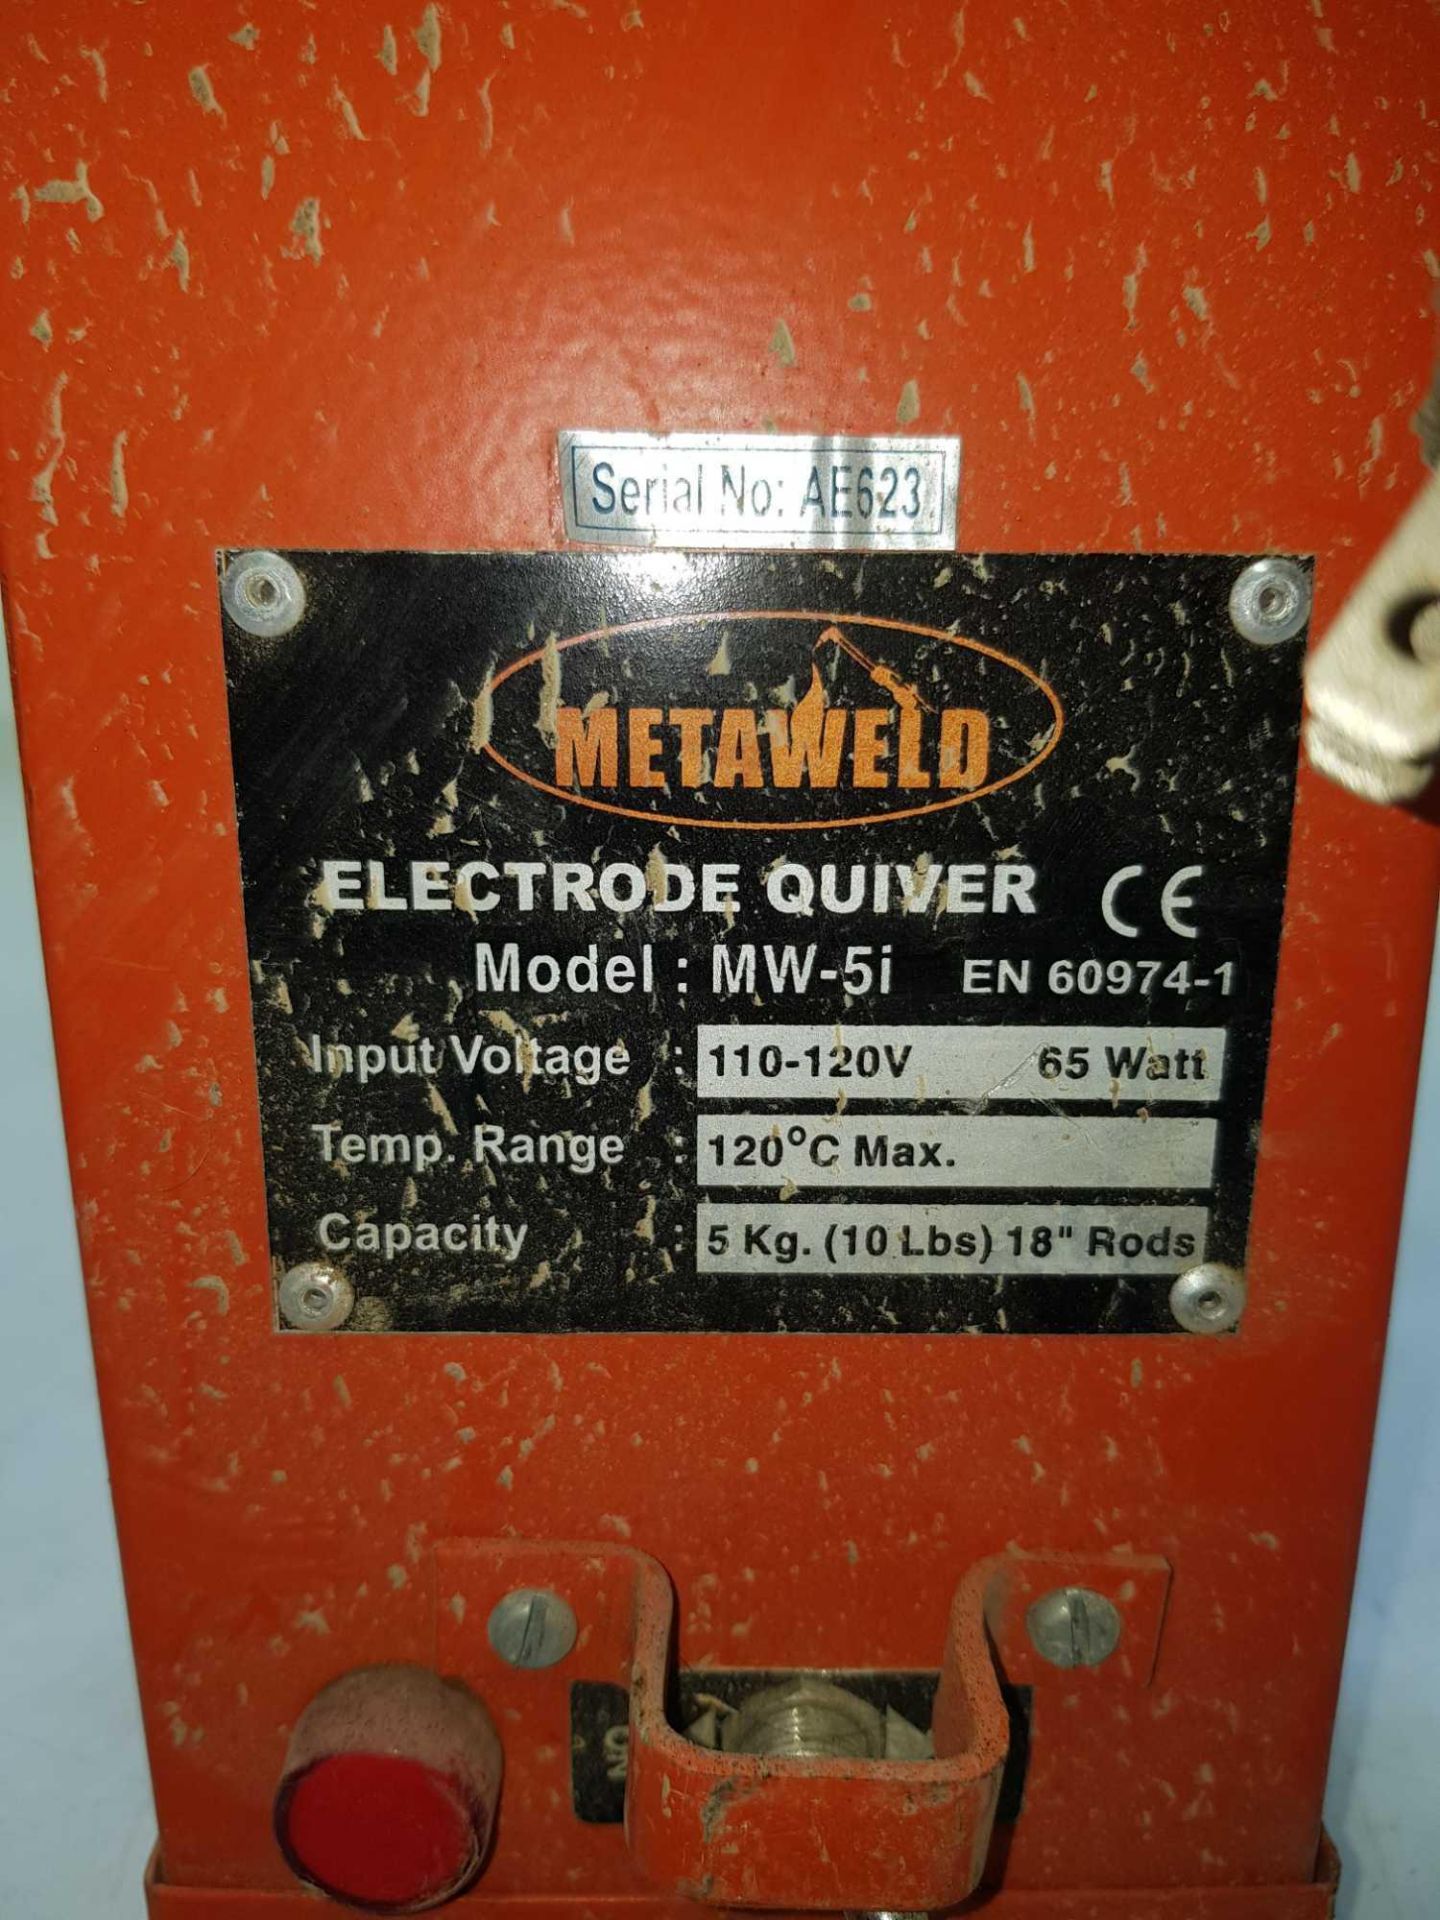 Metaweld electrode quiver 110v - Image 2 of 3